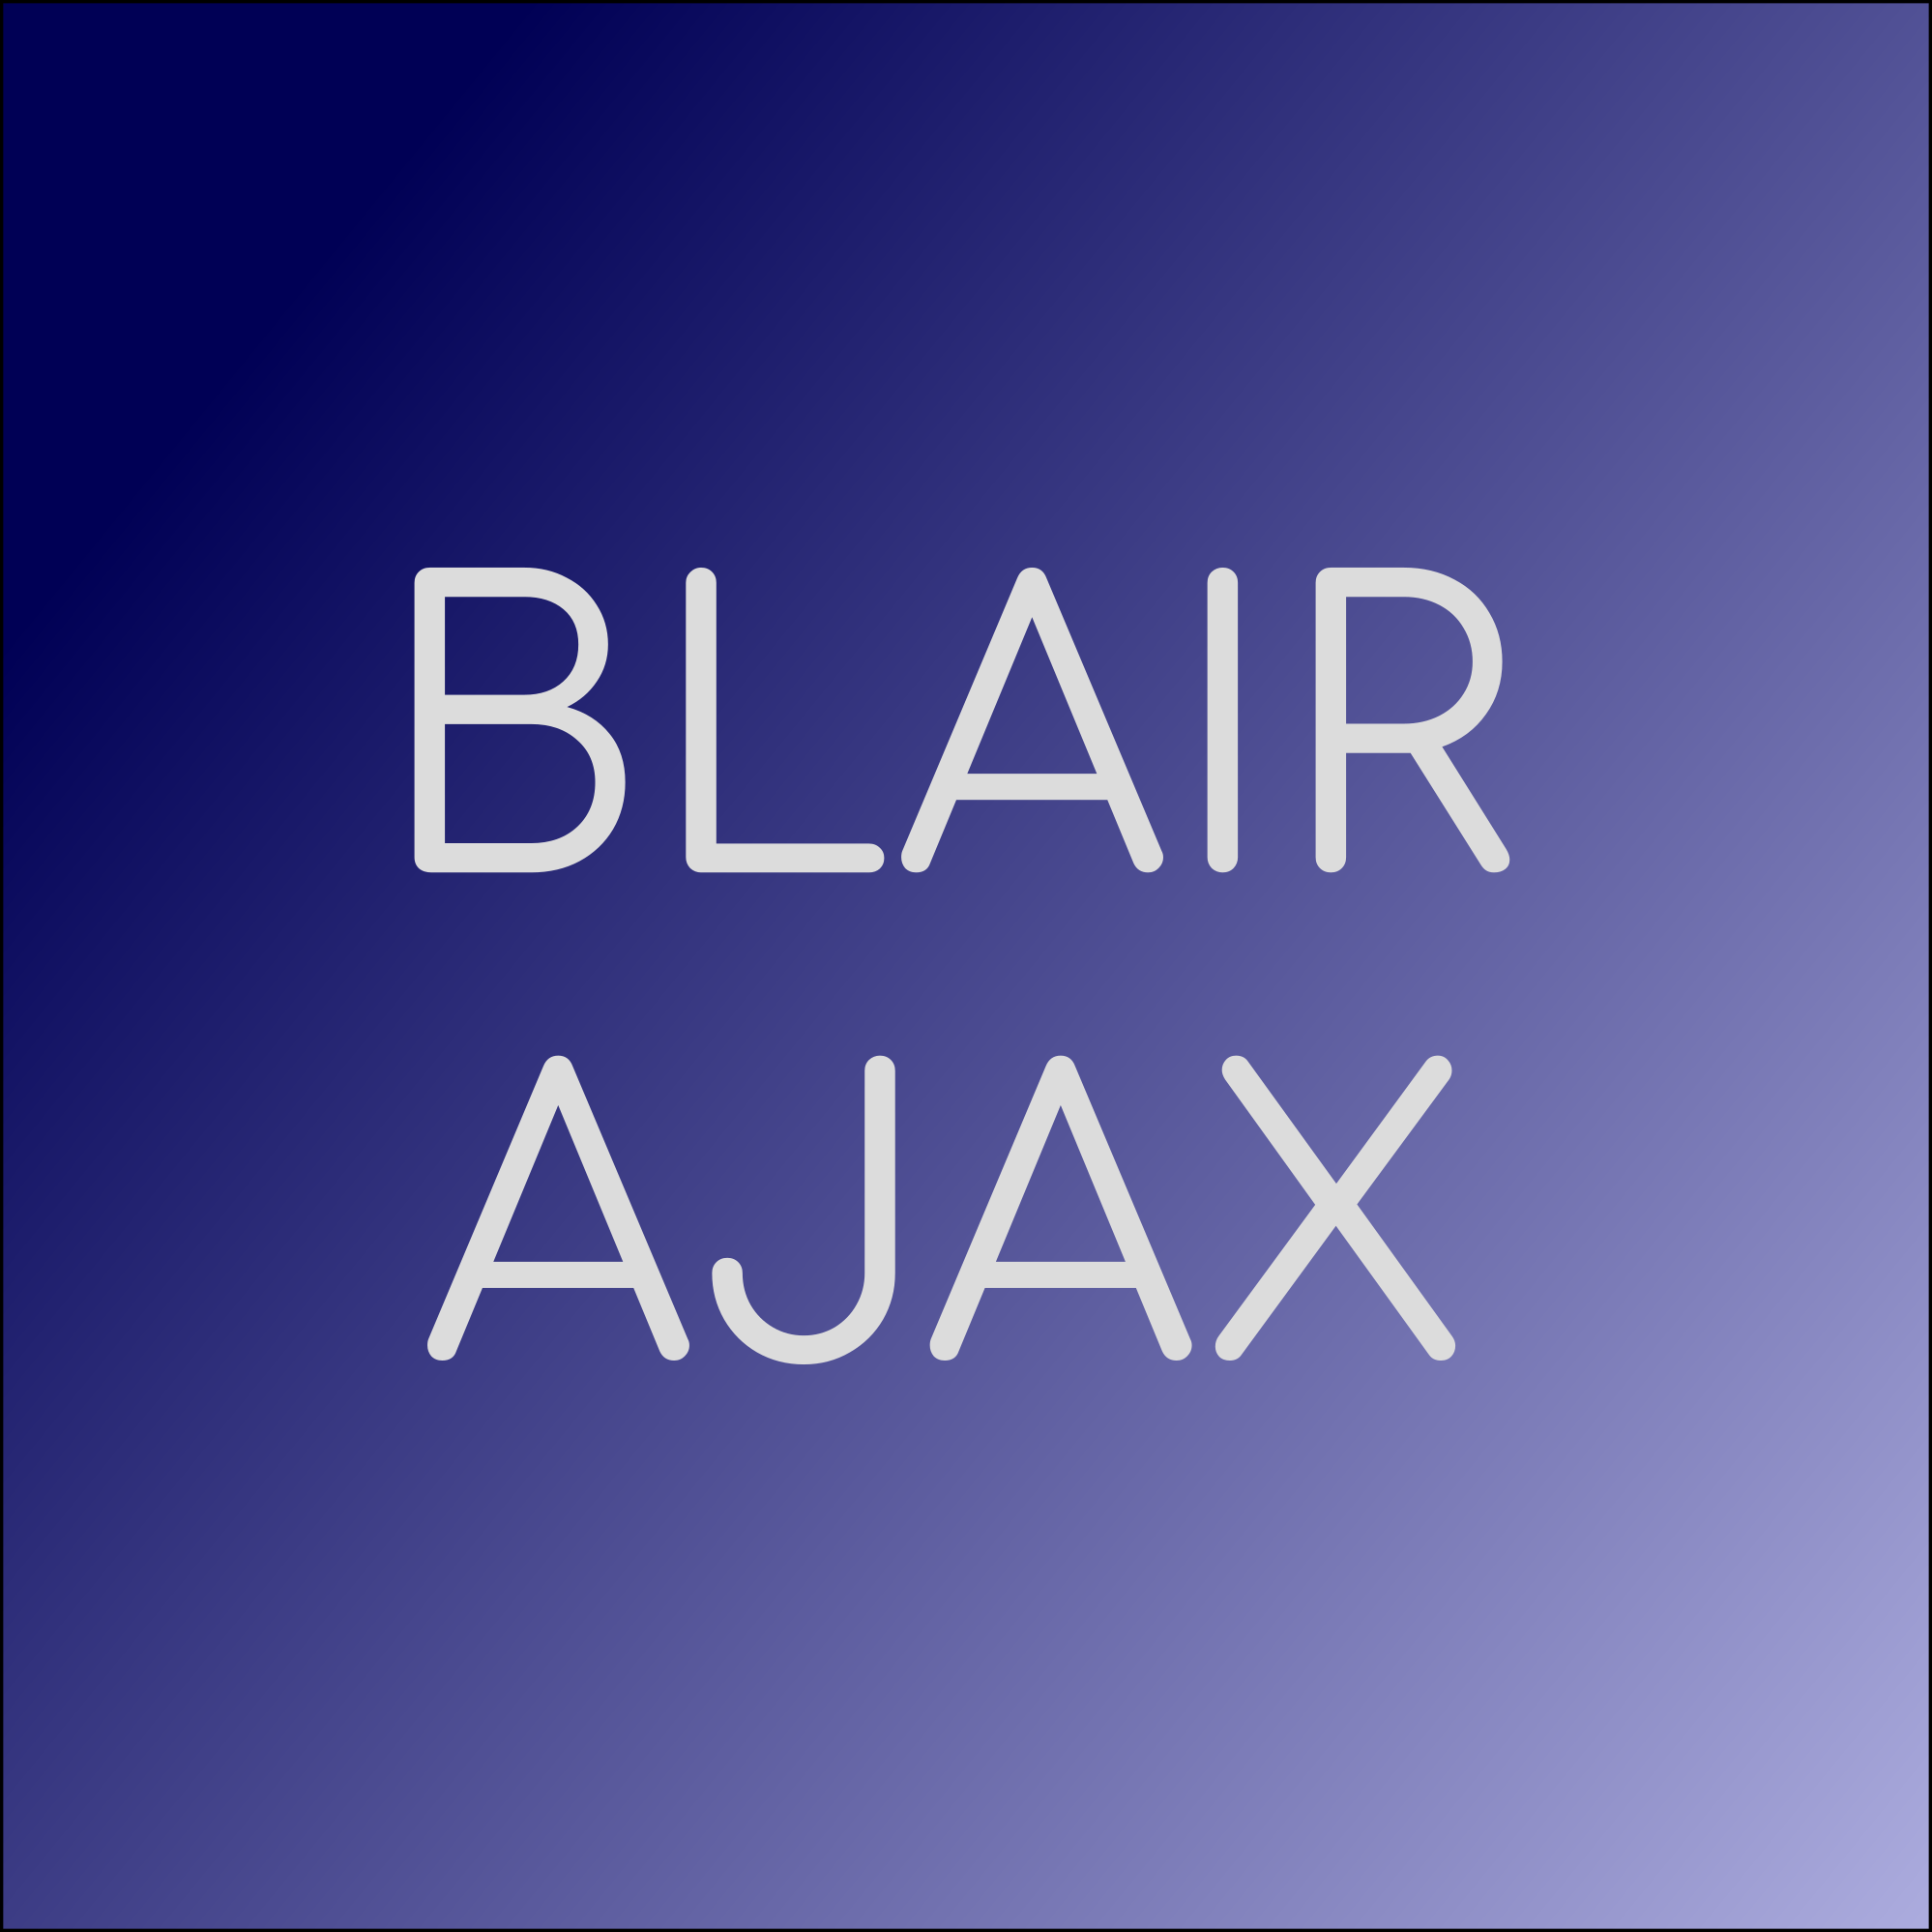 Blair Ajax